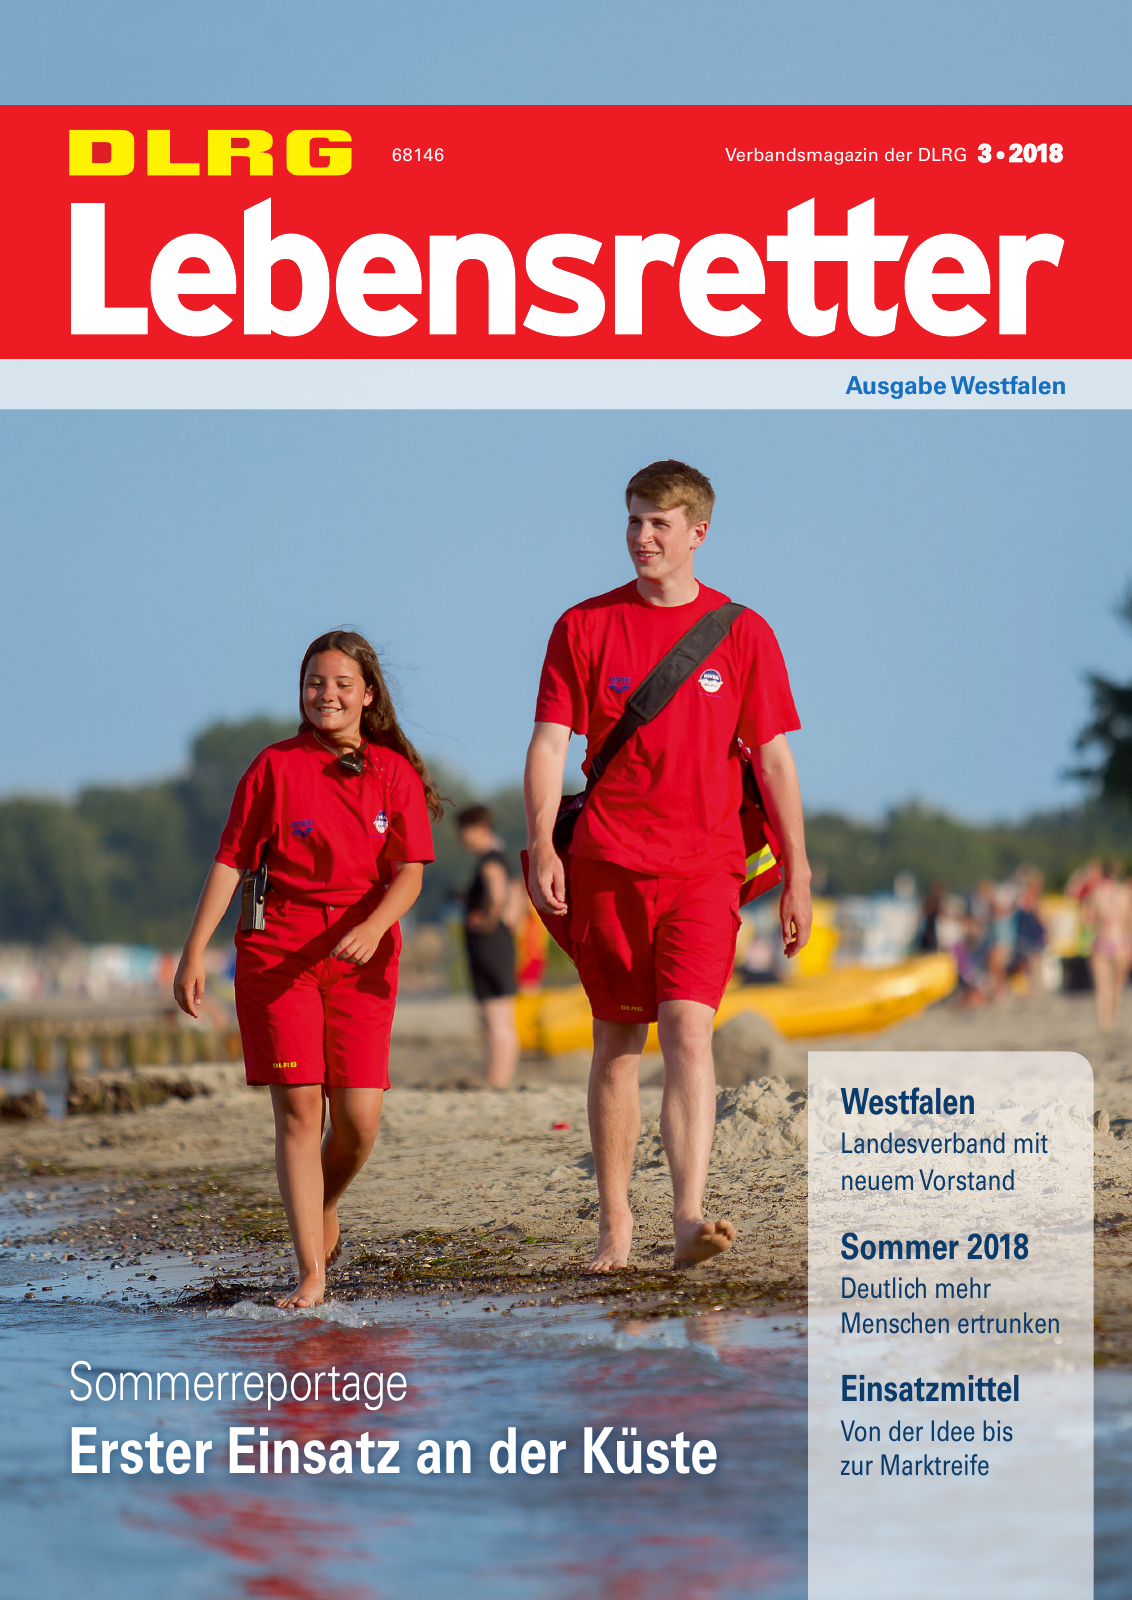 Vorschau Lebensretter 3/2018 - Regionalausgabe Westfalen Seite 1